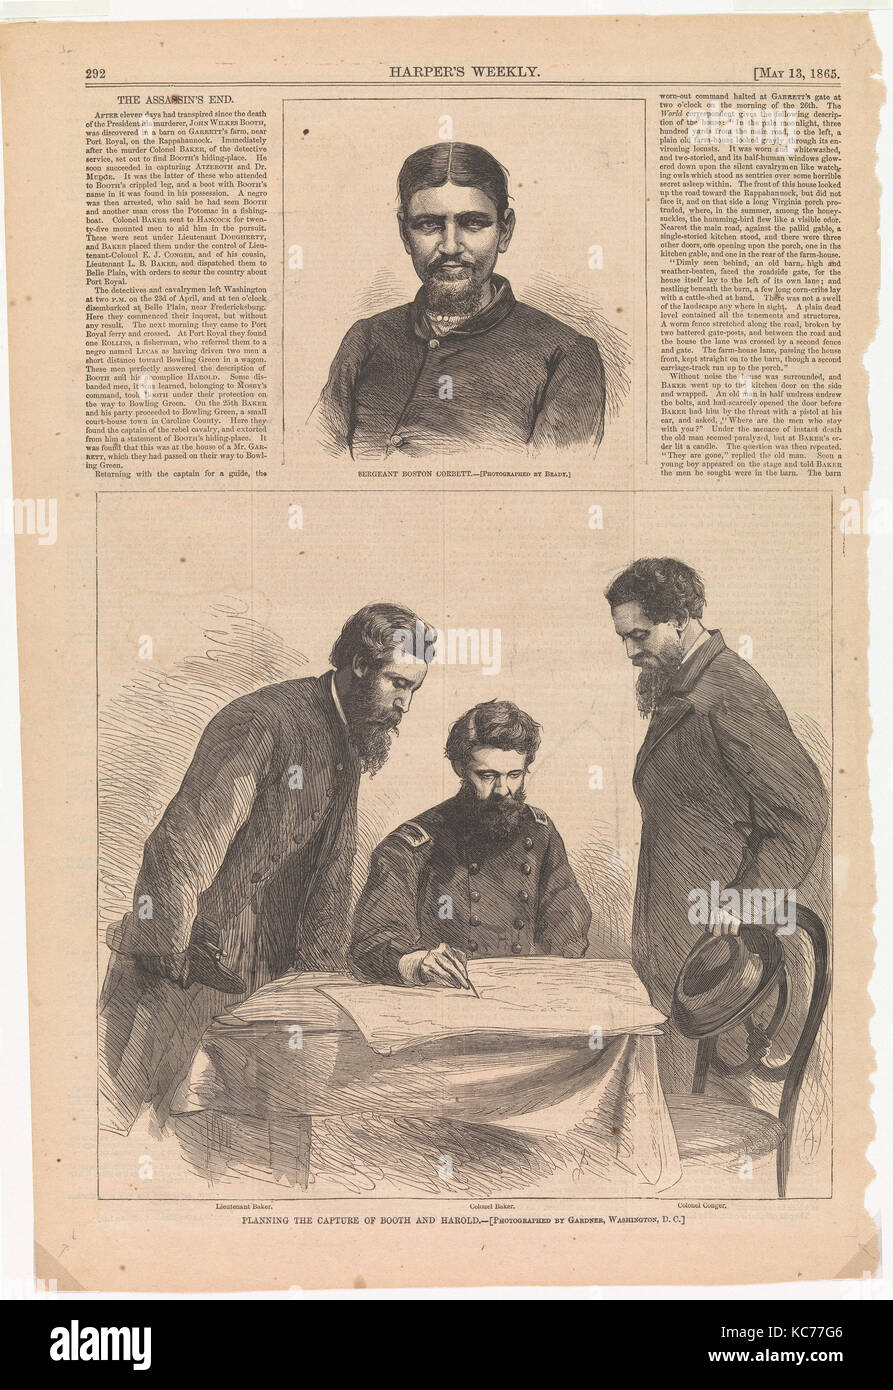 La planification de la capture de stand et Harold, après Alexander Gardner, 1865 Banque D'Images